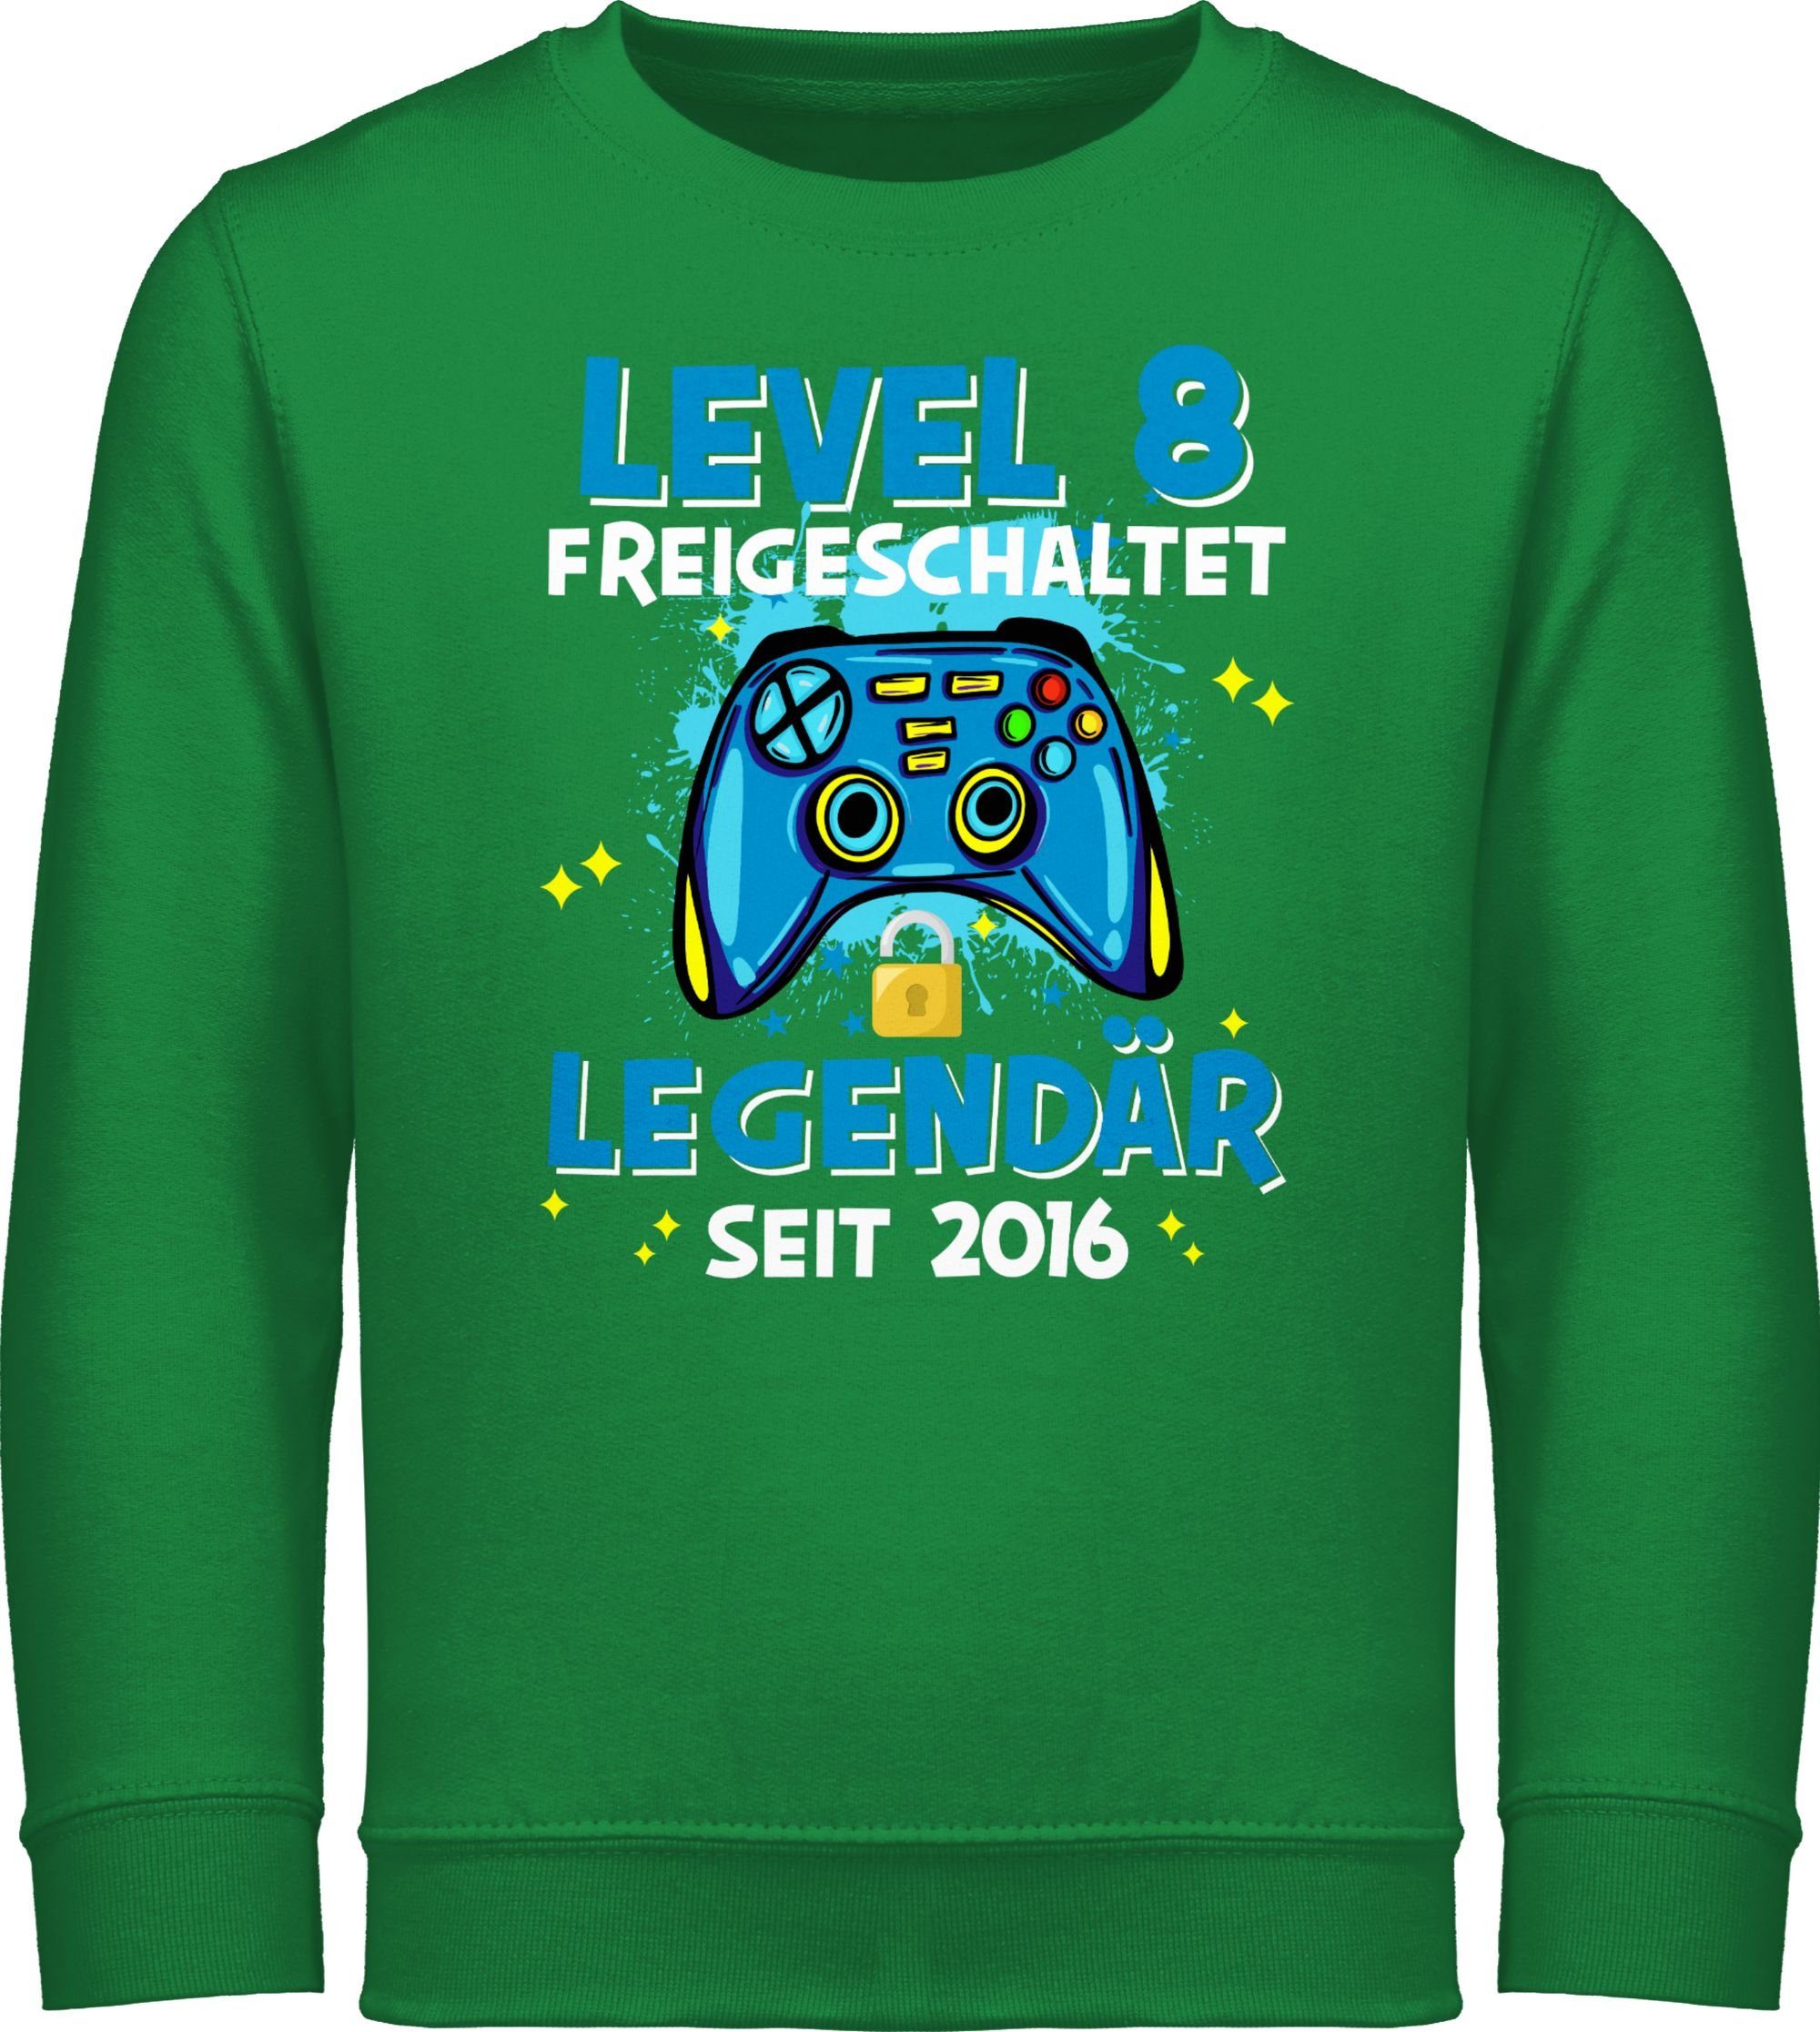 Shirtracer Sweatshirt Level 8 freigeschaltet Legendär seit 2016 8. Geburtstag